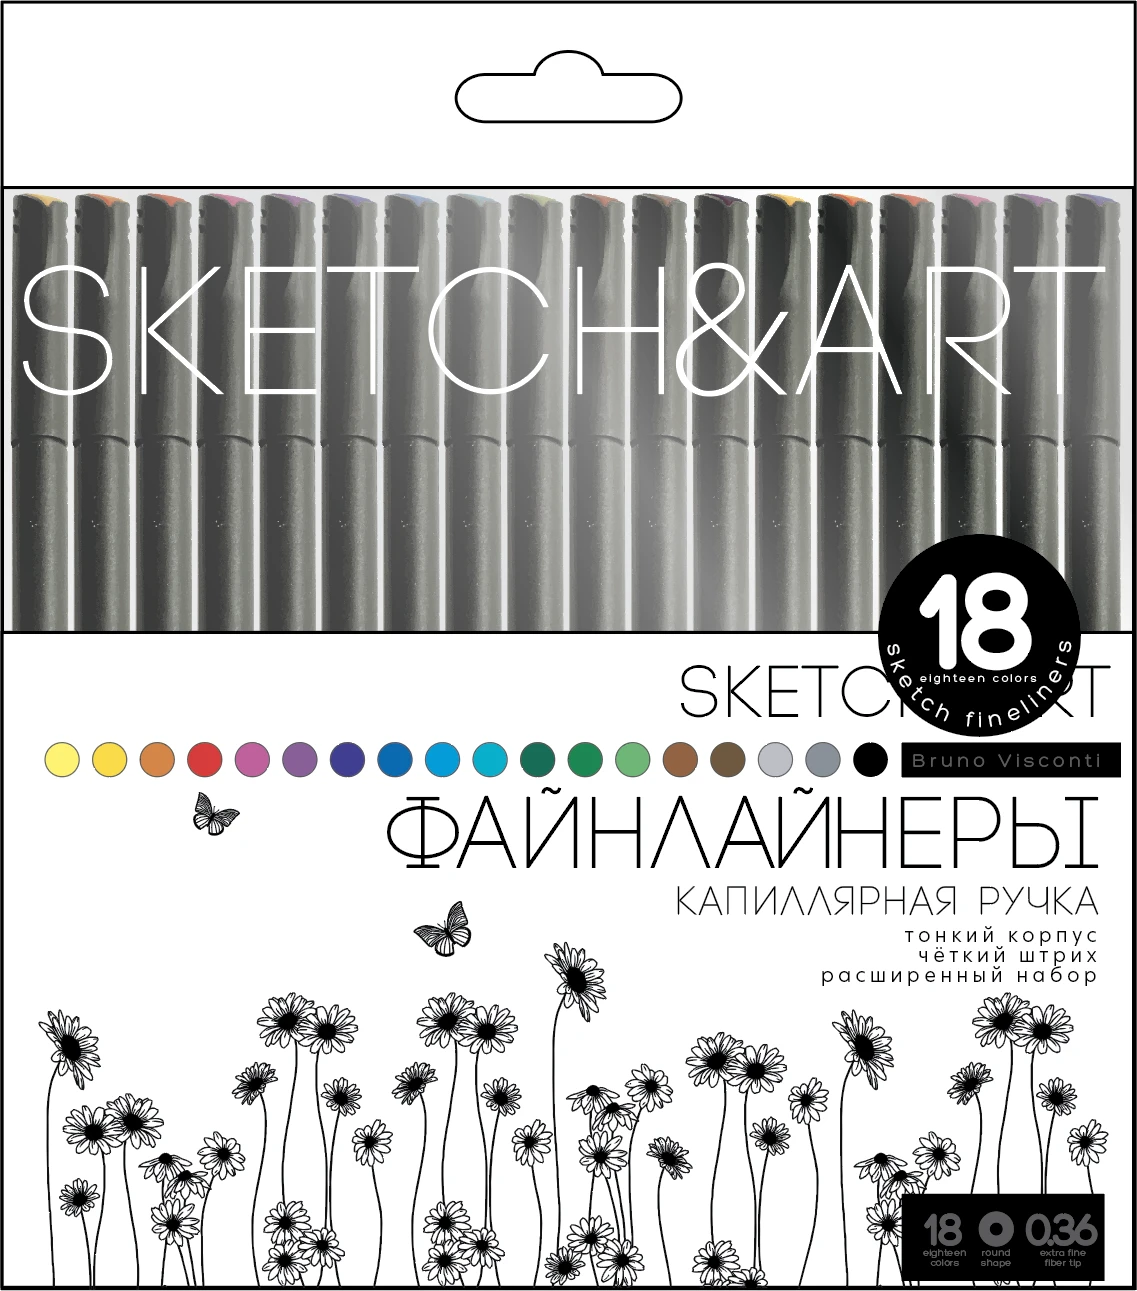 НАБОР СКЕТЧ - ЛИНЕРОВ "SKETCH&ART. BLACK EDITION" 0.36 ММ, 18 ЦВ.